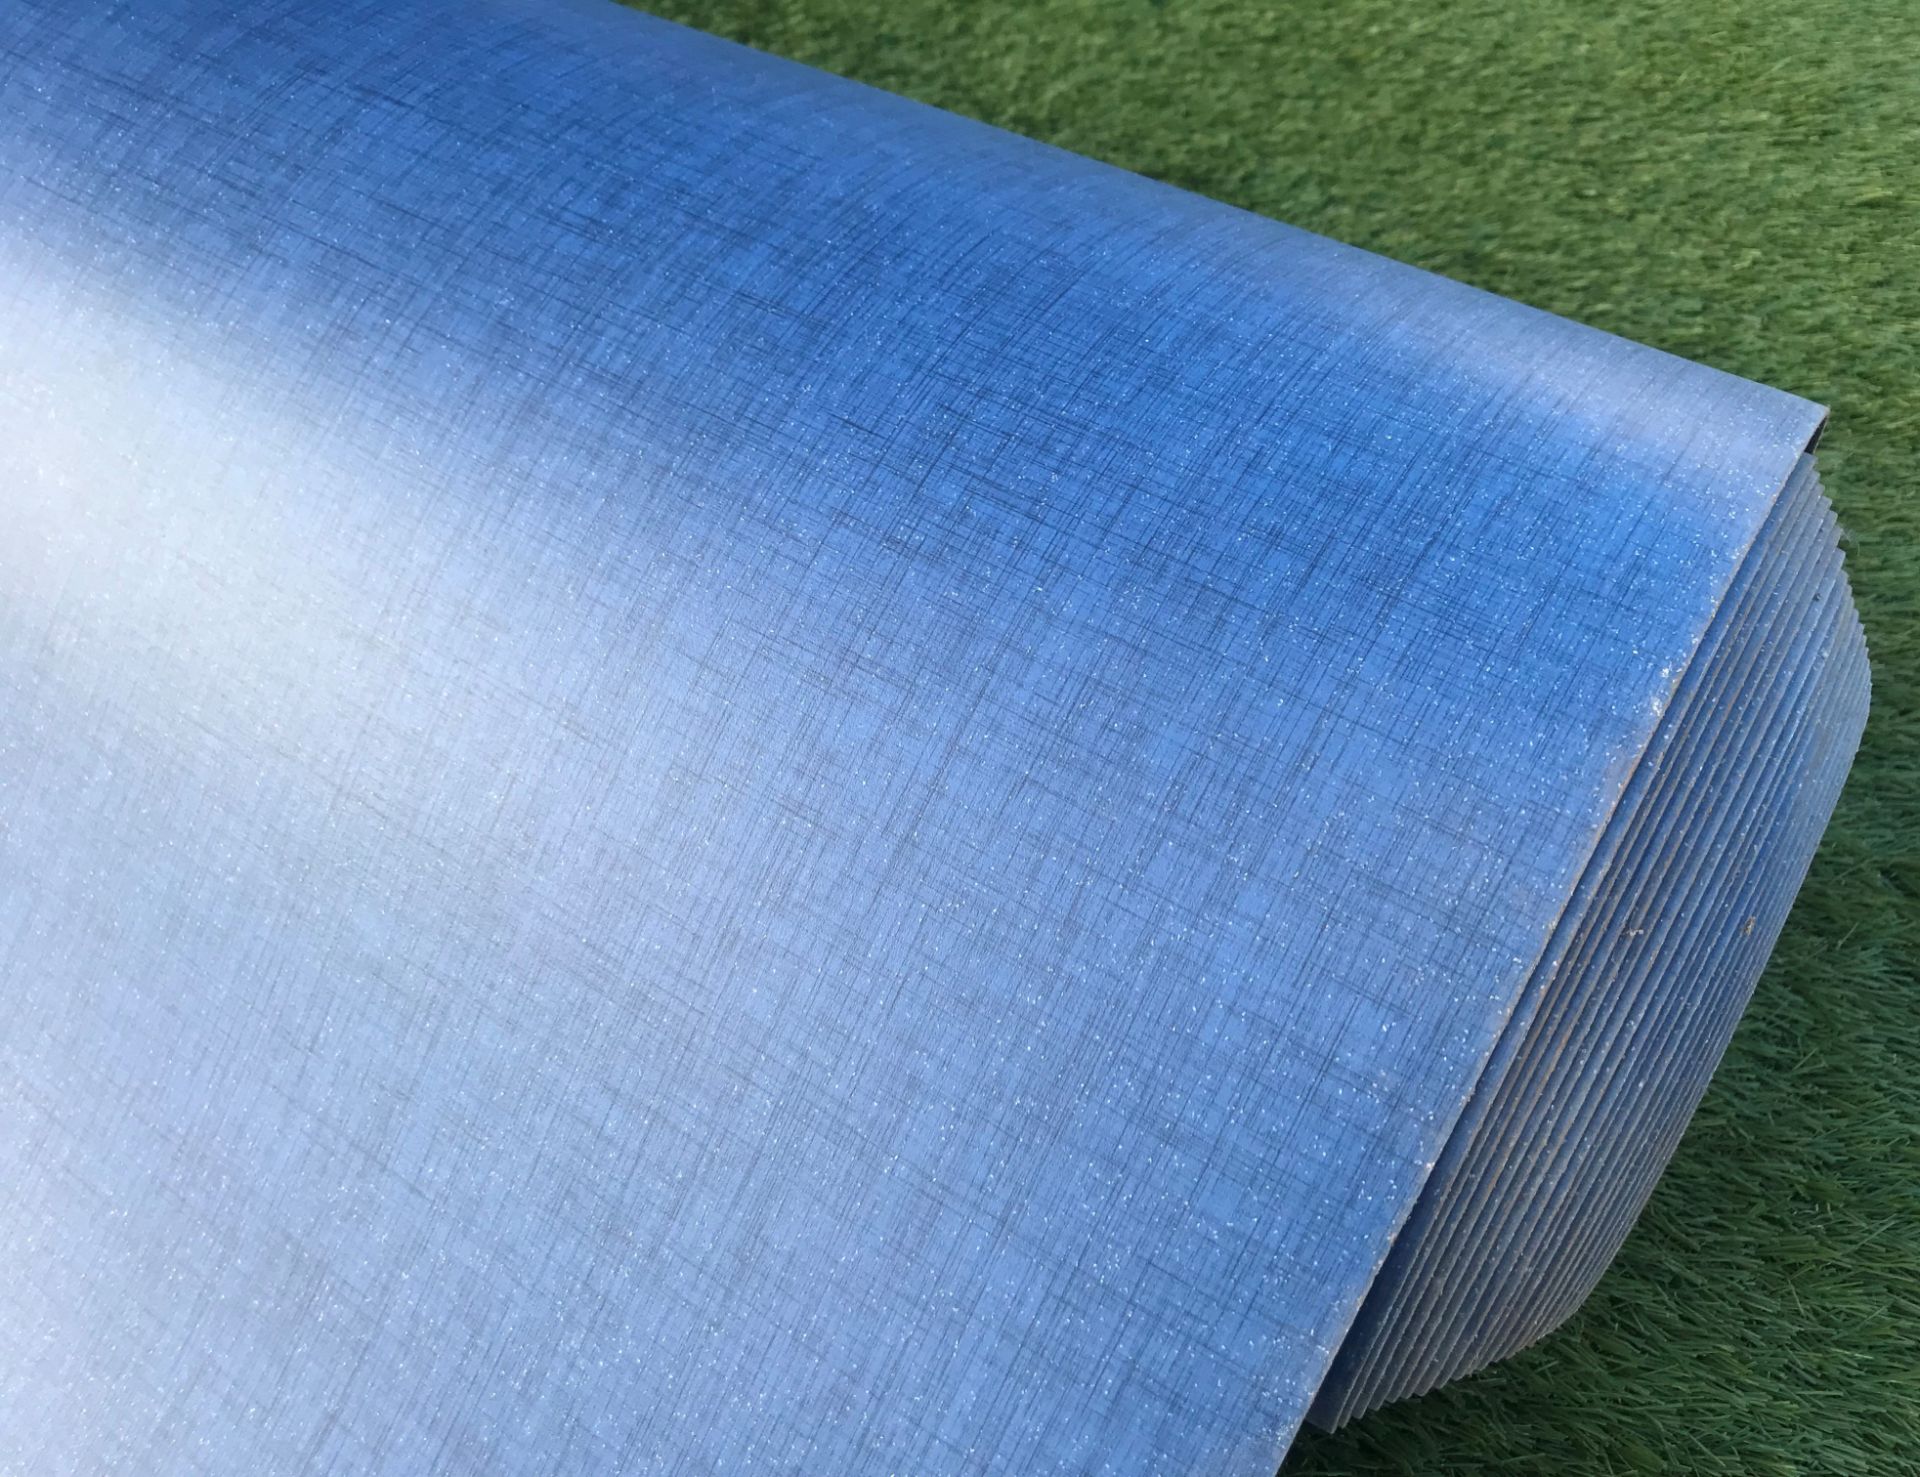 1 x GERFLOR Tarkett Commercial Grade Safety Flooring In Dark Blue -20X2M Roll - Ref: NWF004 - - Image 2 of 4